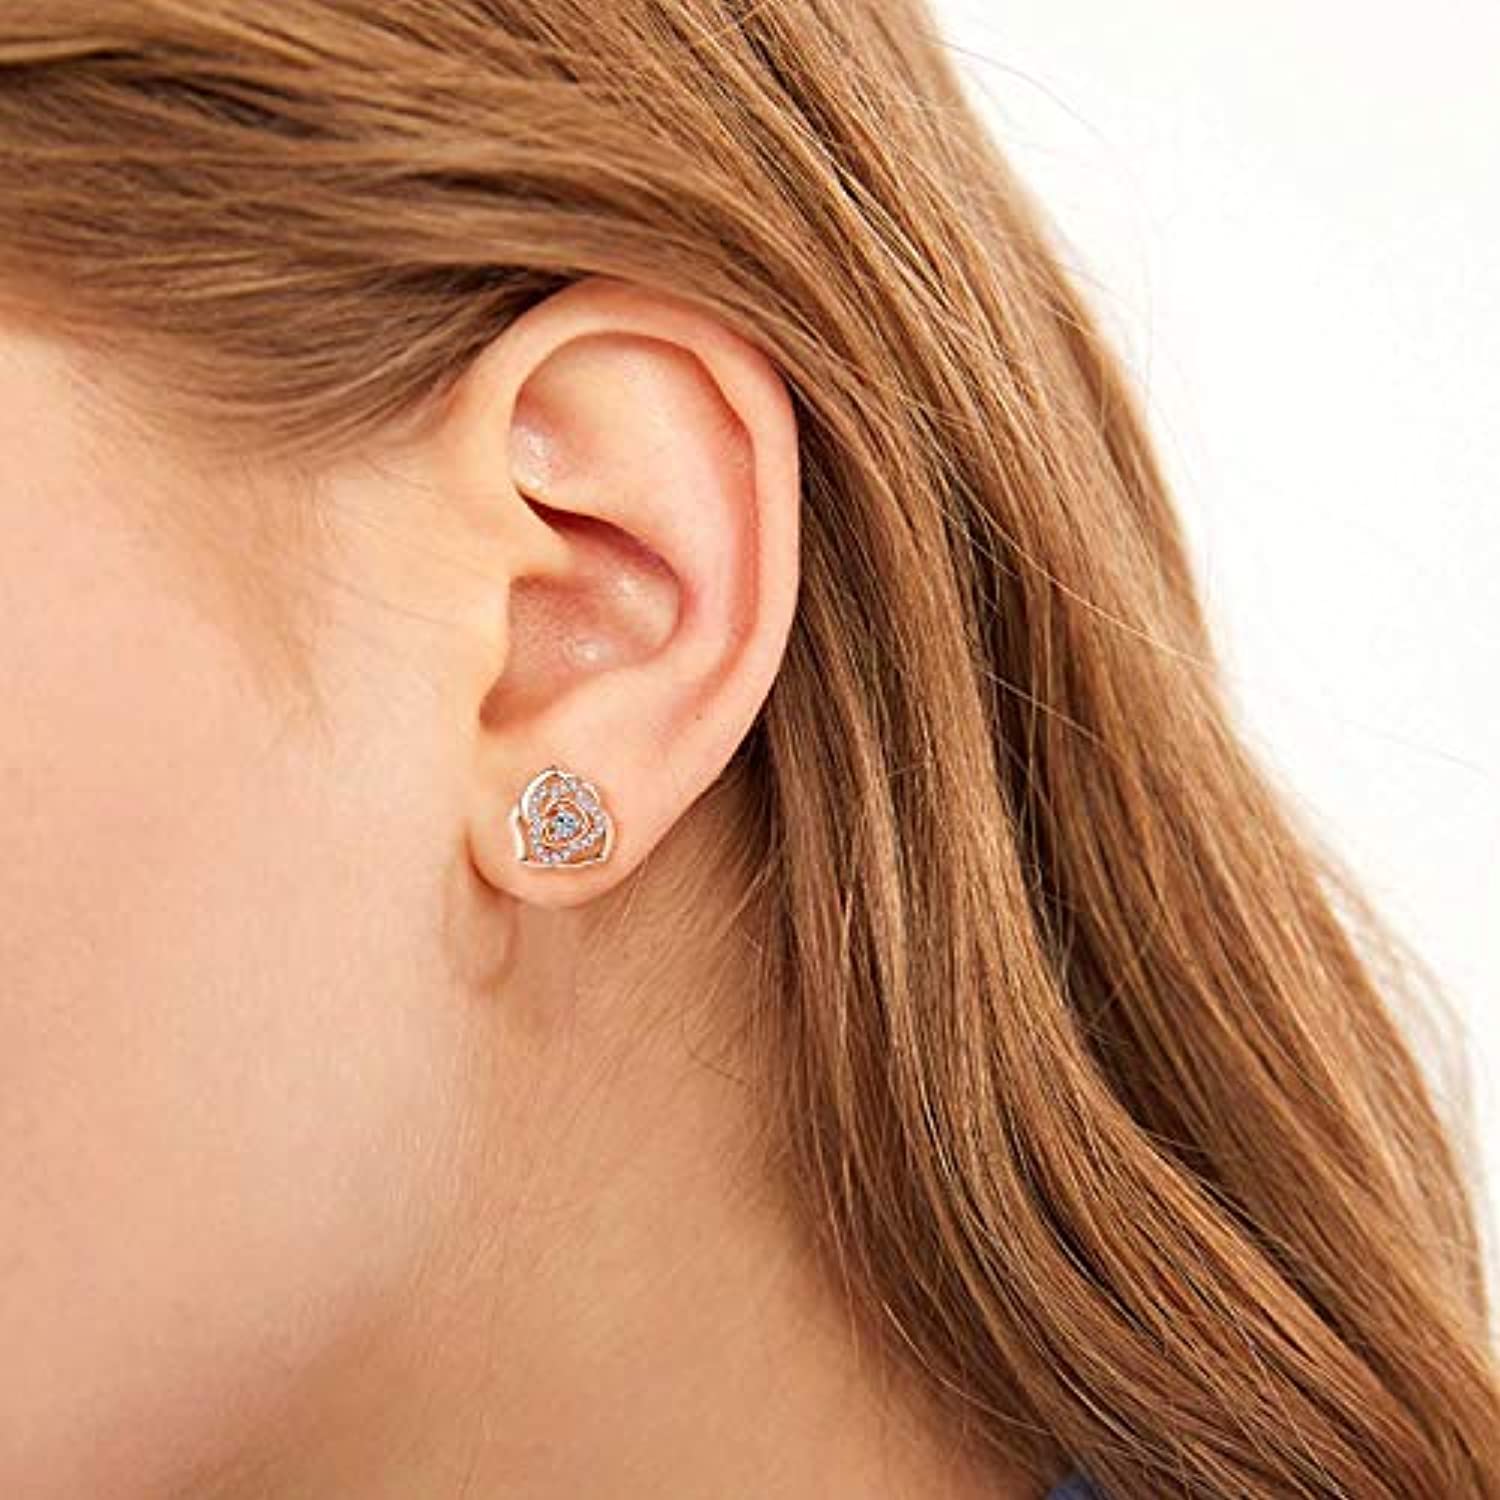 Rose Flower Stud Earring For Women 925 Sterling Silver Hypoallergenic Earrings